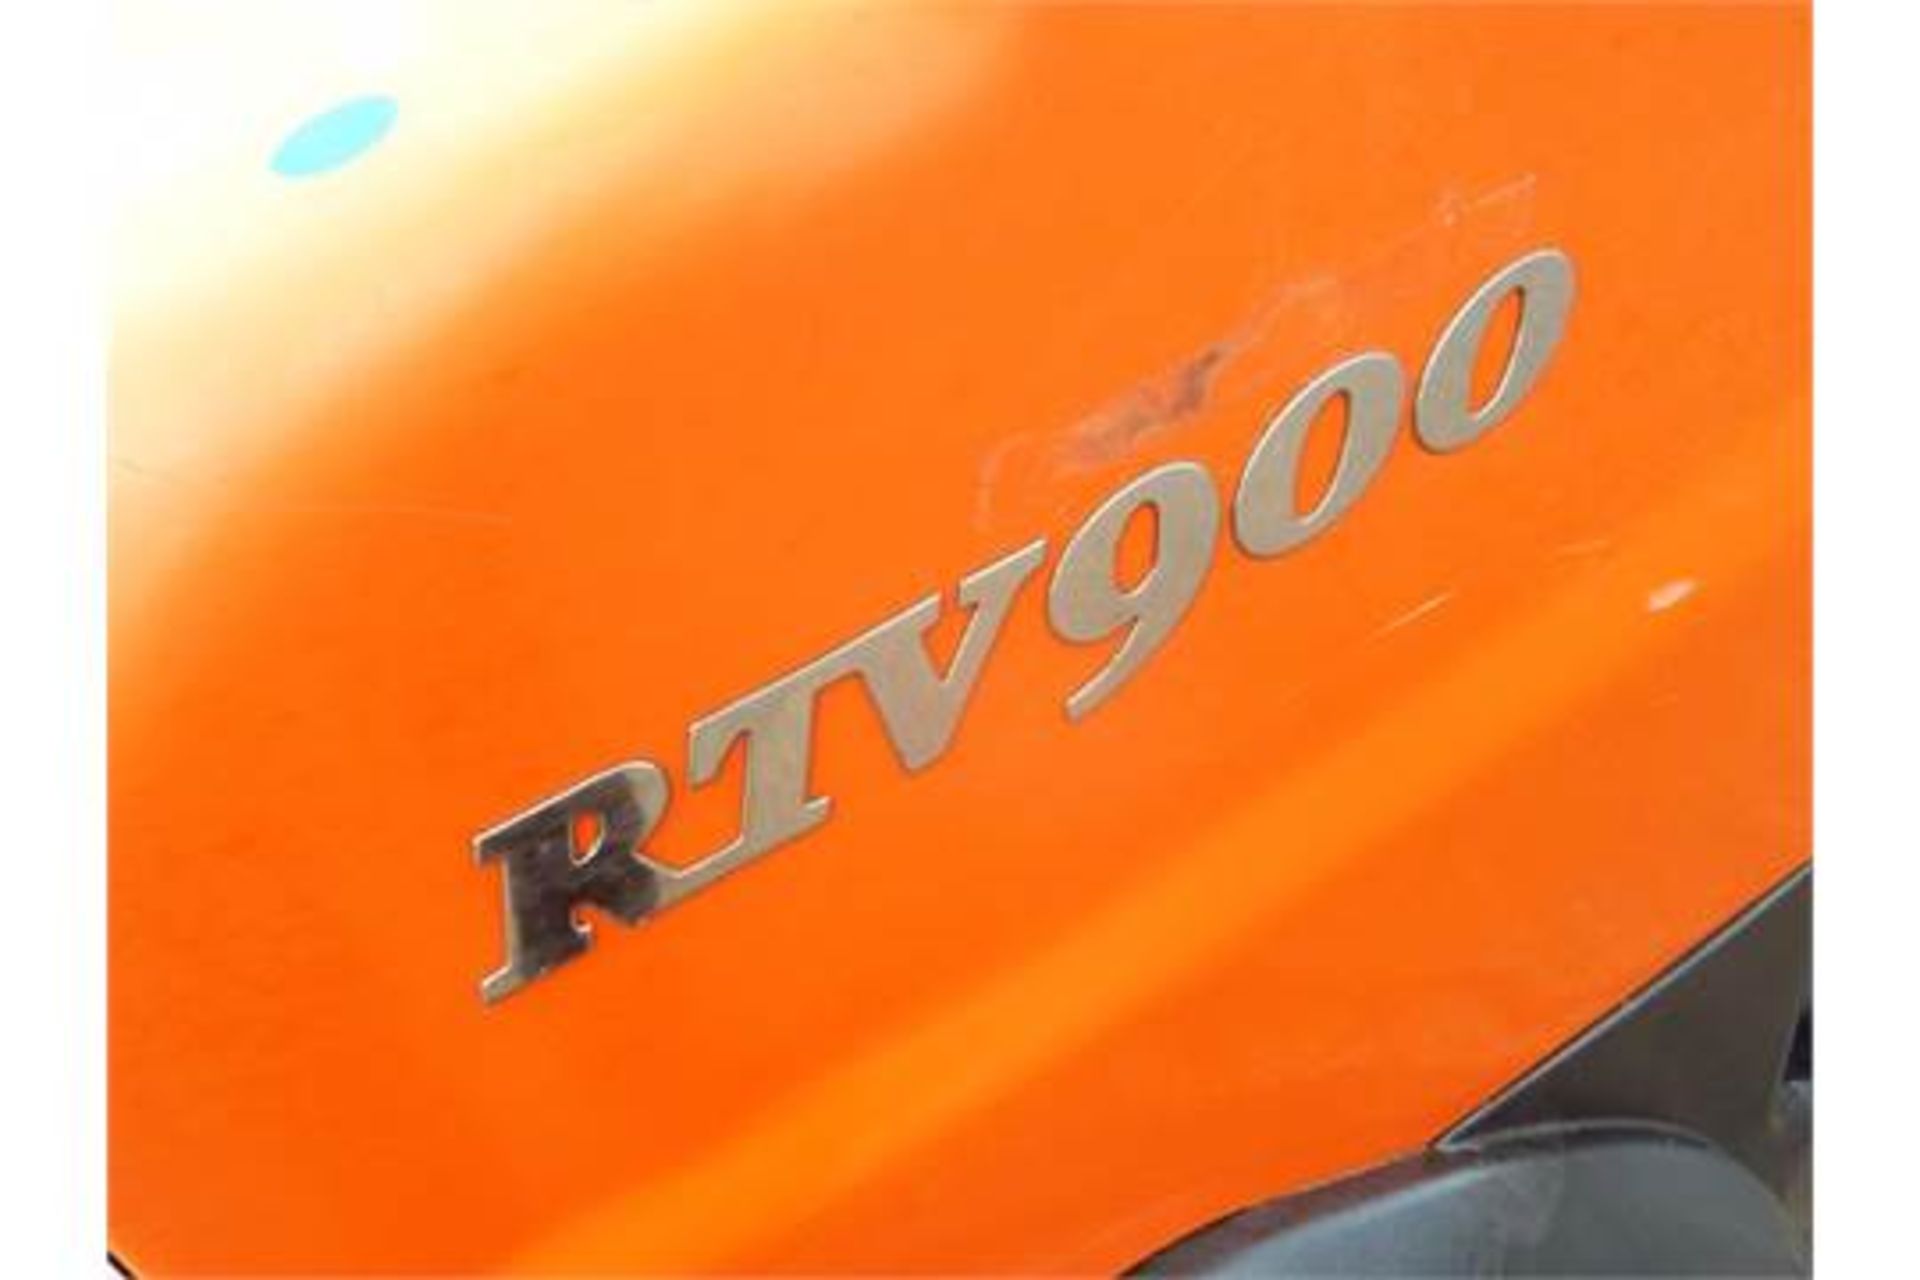 2007 Kubota RTV900 4WD Utility ATV - Image 19 of 19